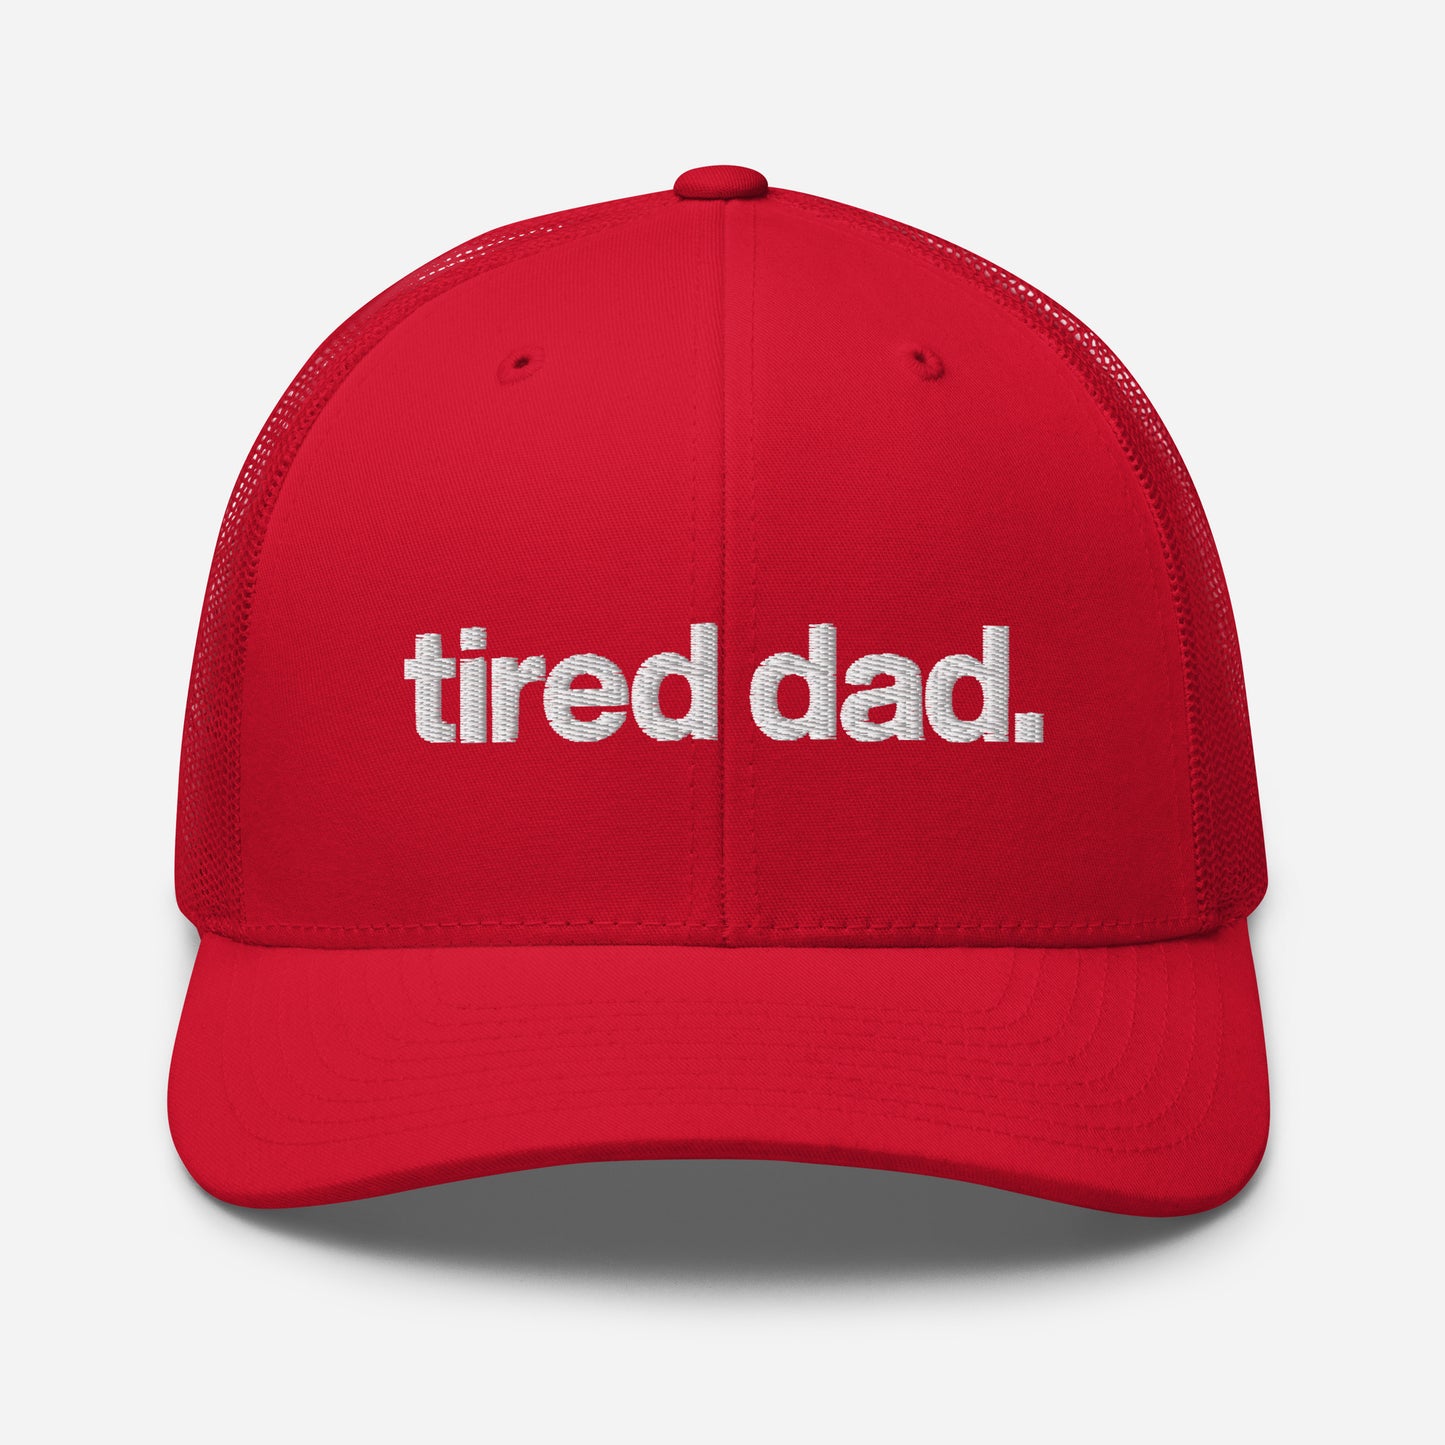 tired dad. trucker hat